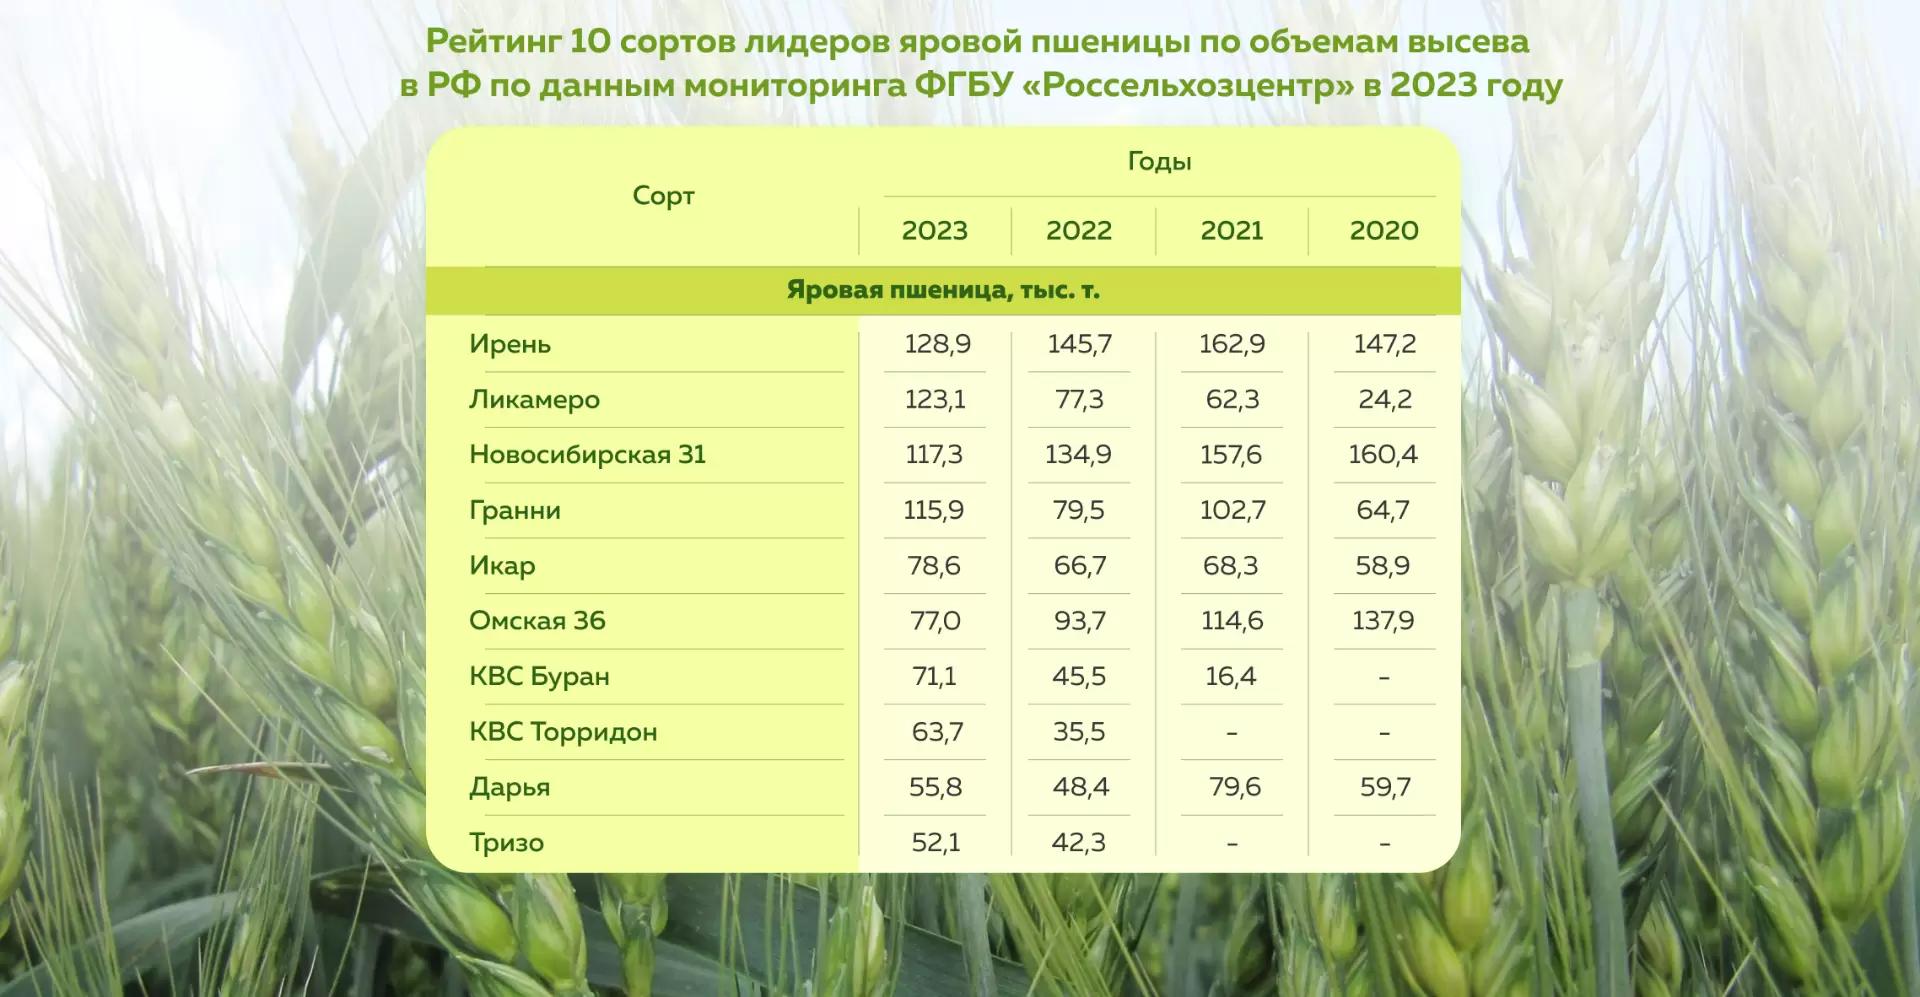 Топ сортов яровой пшеницы за 2023 год